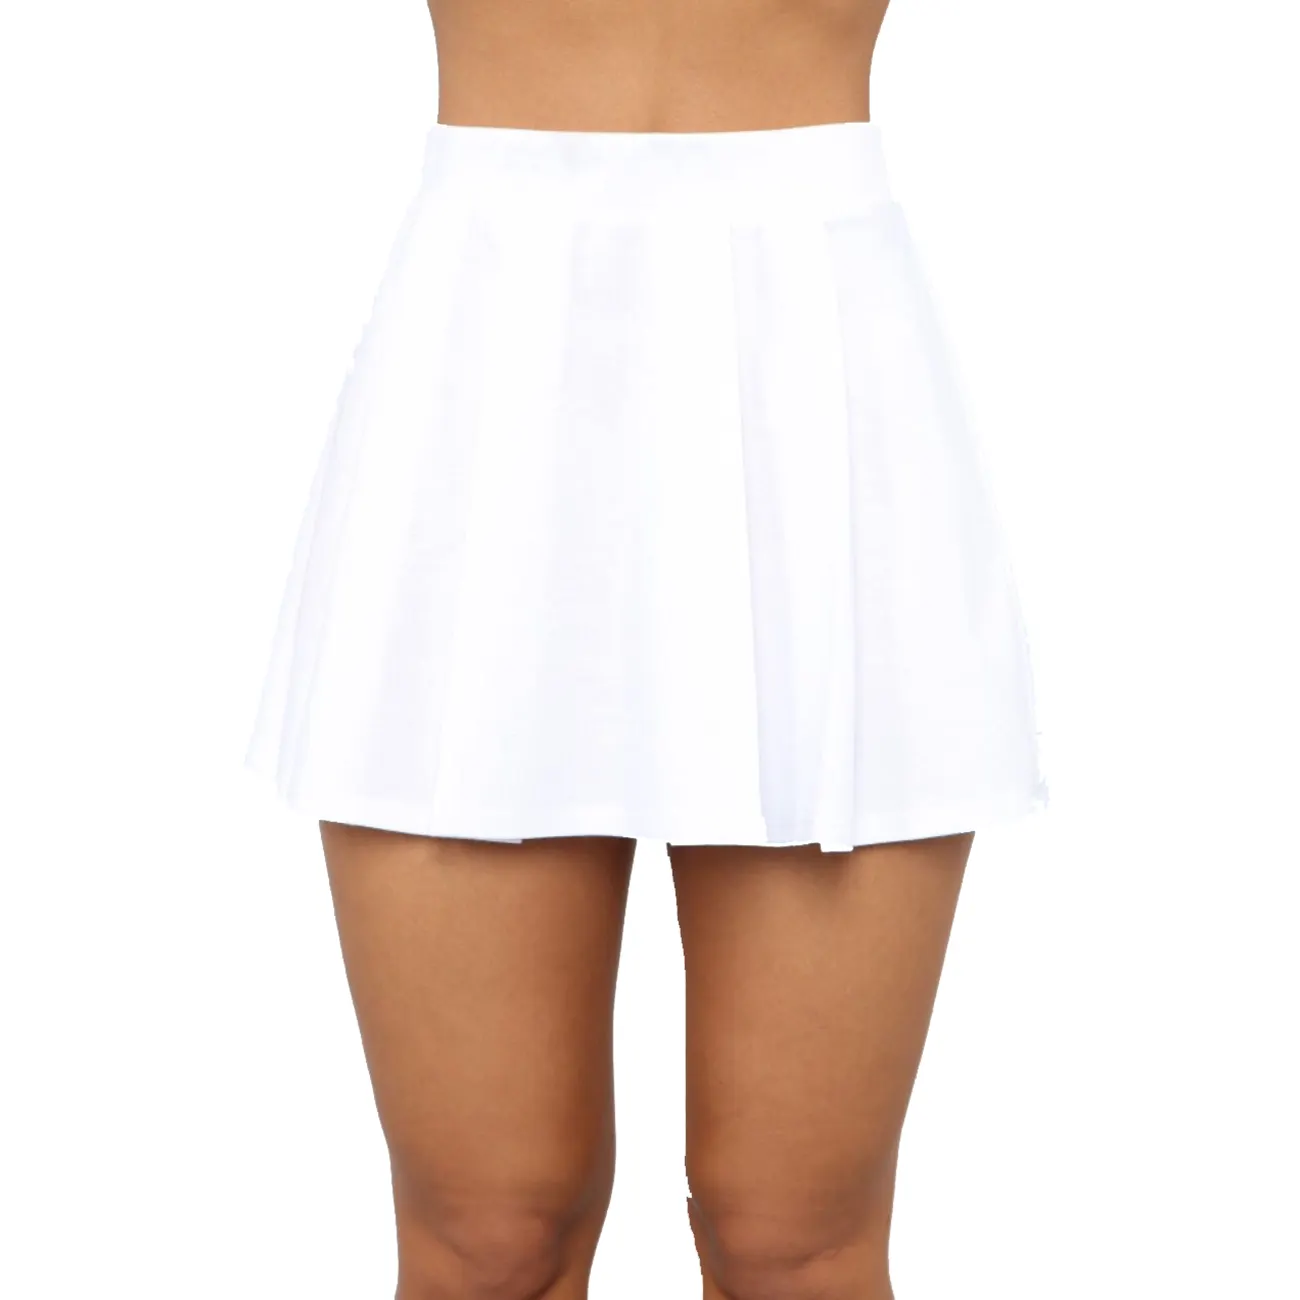 Phụ Nữ Thể Thao Mặc Mini Tennis Váy Workout Đào Tạo Spandex Logo Riêng Quần Vợt Mặc Đồng Phục